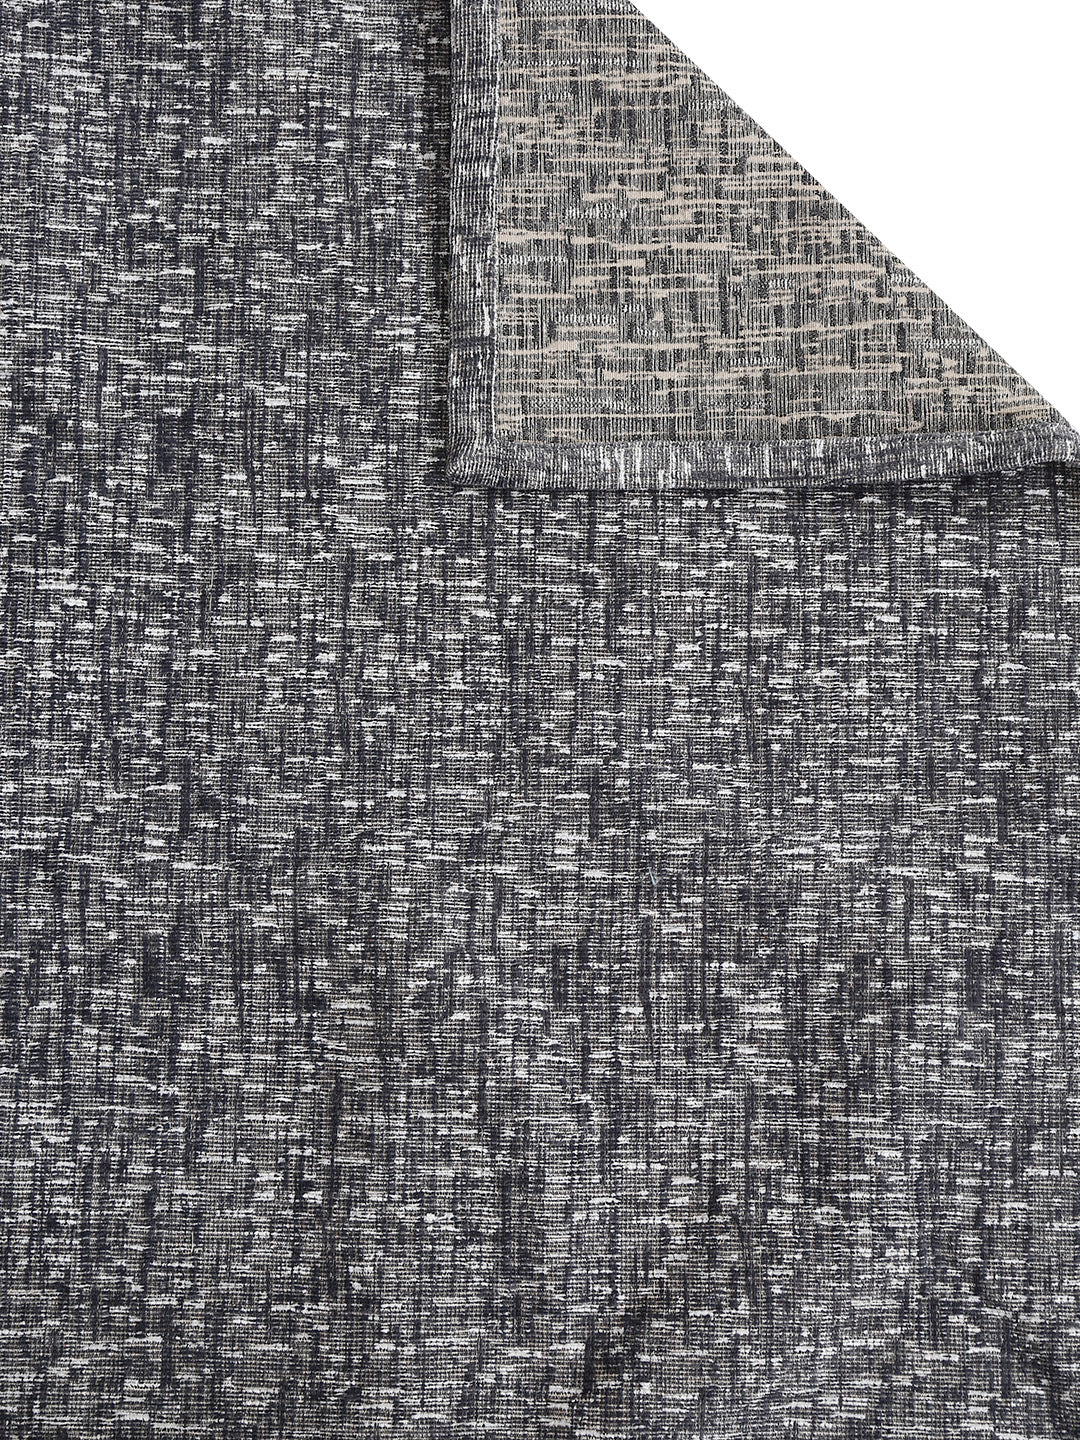 Klotthe Grey Woven Design 6 Seater Rectangular Table Cover